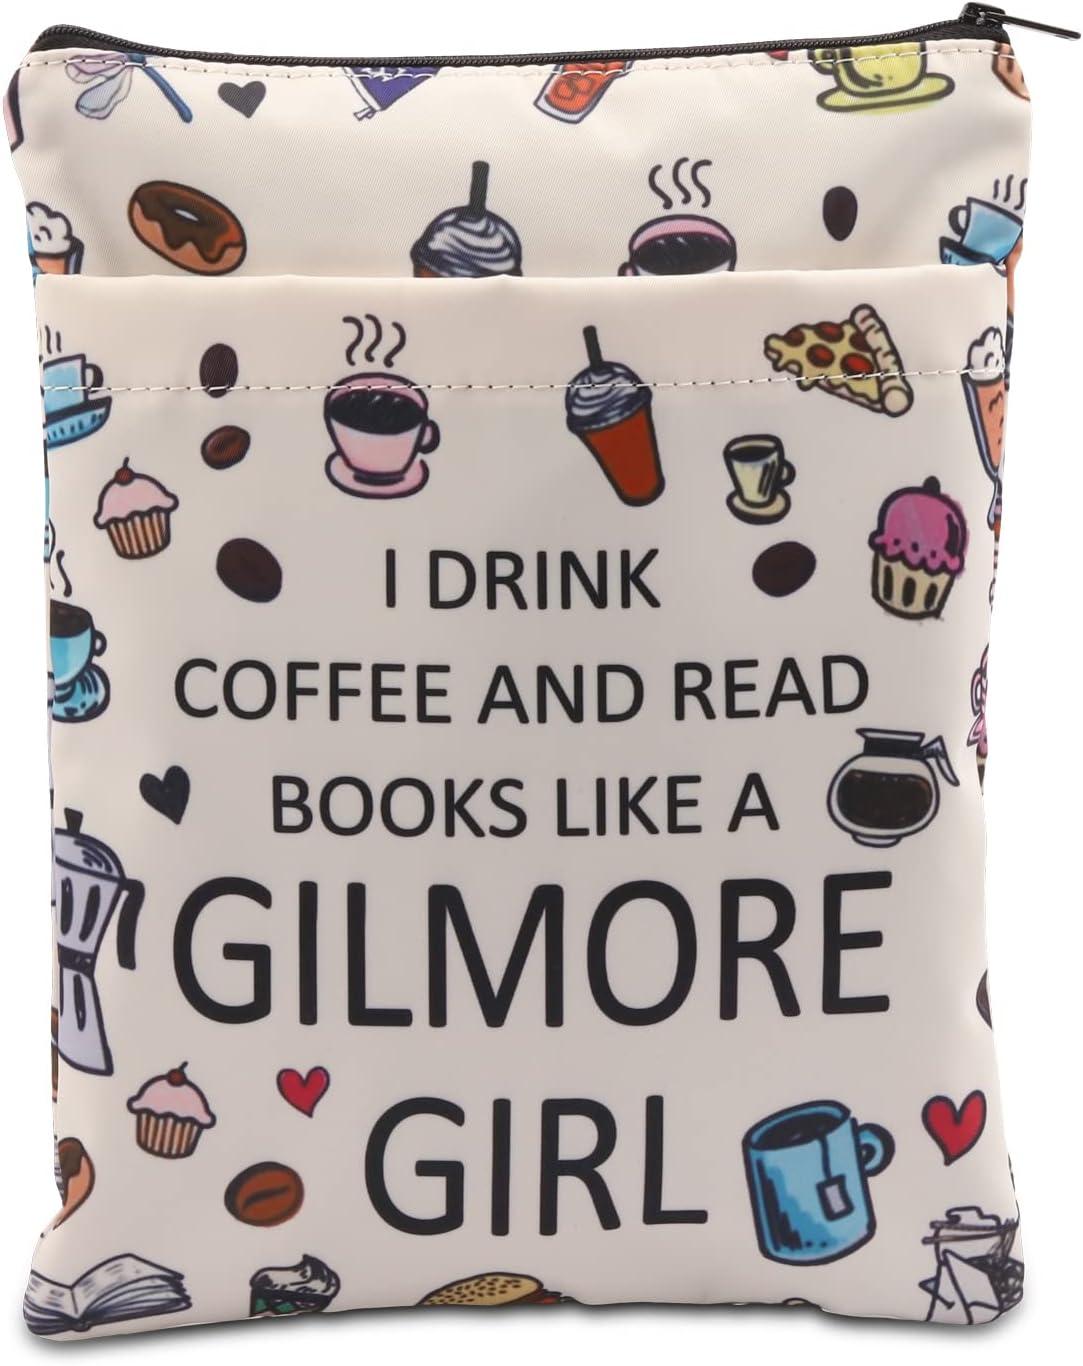 一个白色的书套，里面有咖啡和糕点，上面写着“我像吉尔莫女孩一样喝咖啡和读书”